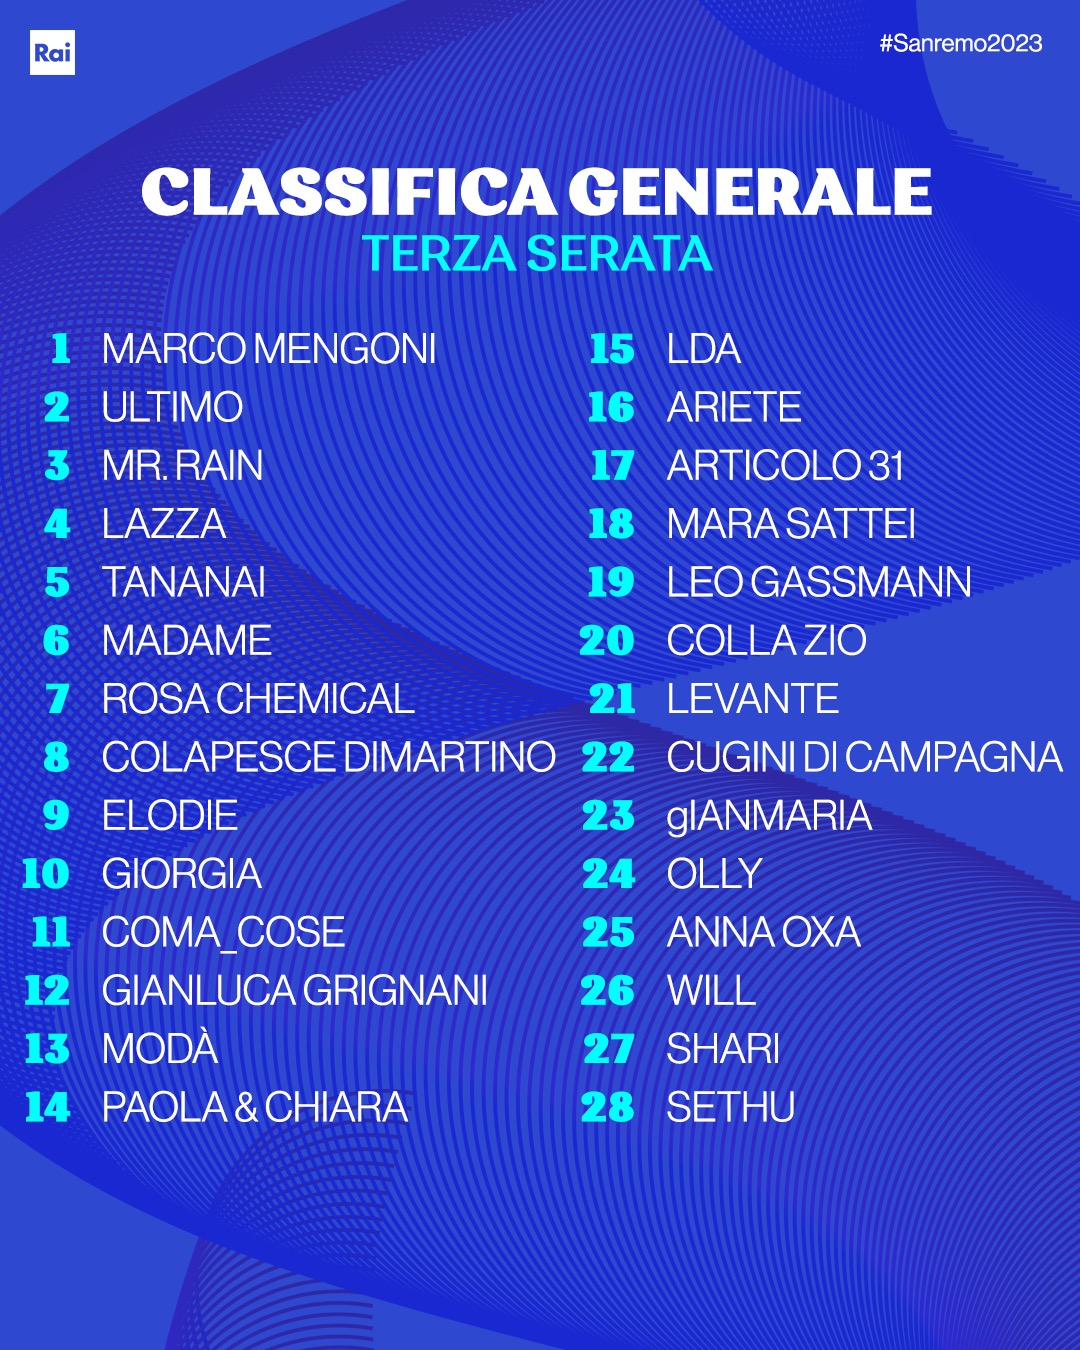 Sanremo 2023 - Classifica terza serata